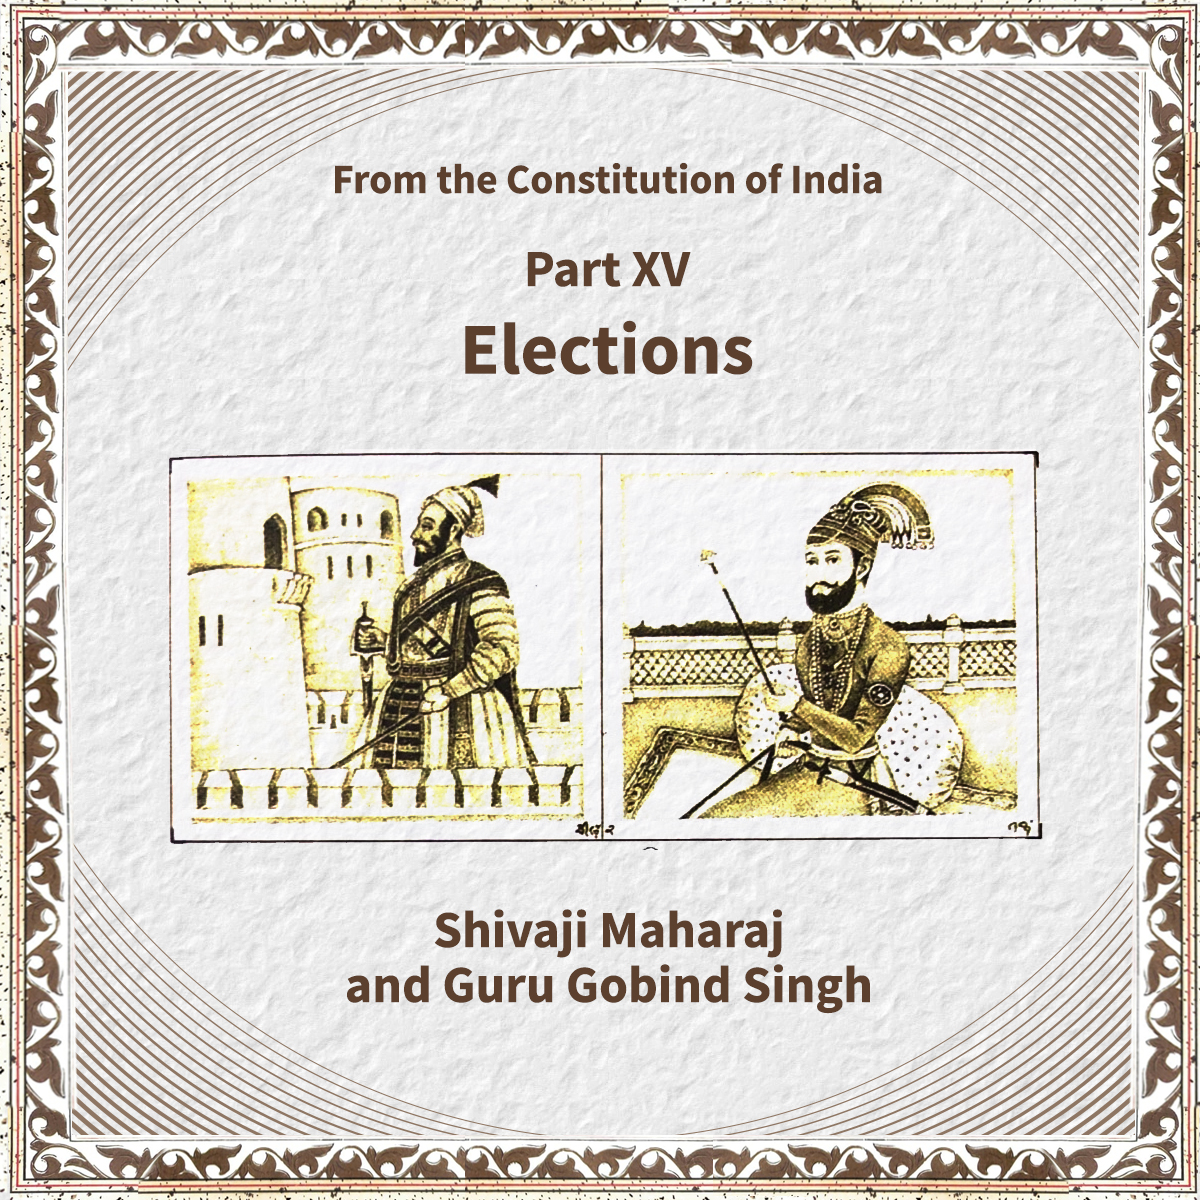 Chapter related on the Elections in the Constitution of India has images of Shivaji Maharaj and Guru Gobind Singh Ji. संविधान में चुनाव से जुड़े अध्याय में शिवाजी महाराज और गुरु गोबिंद सिंह जी का चित्र है। 14/17 #SamvidhanDiwas